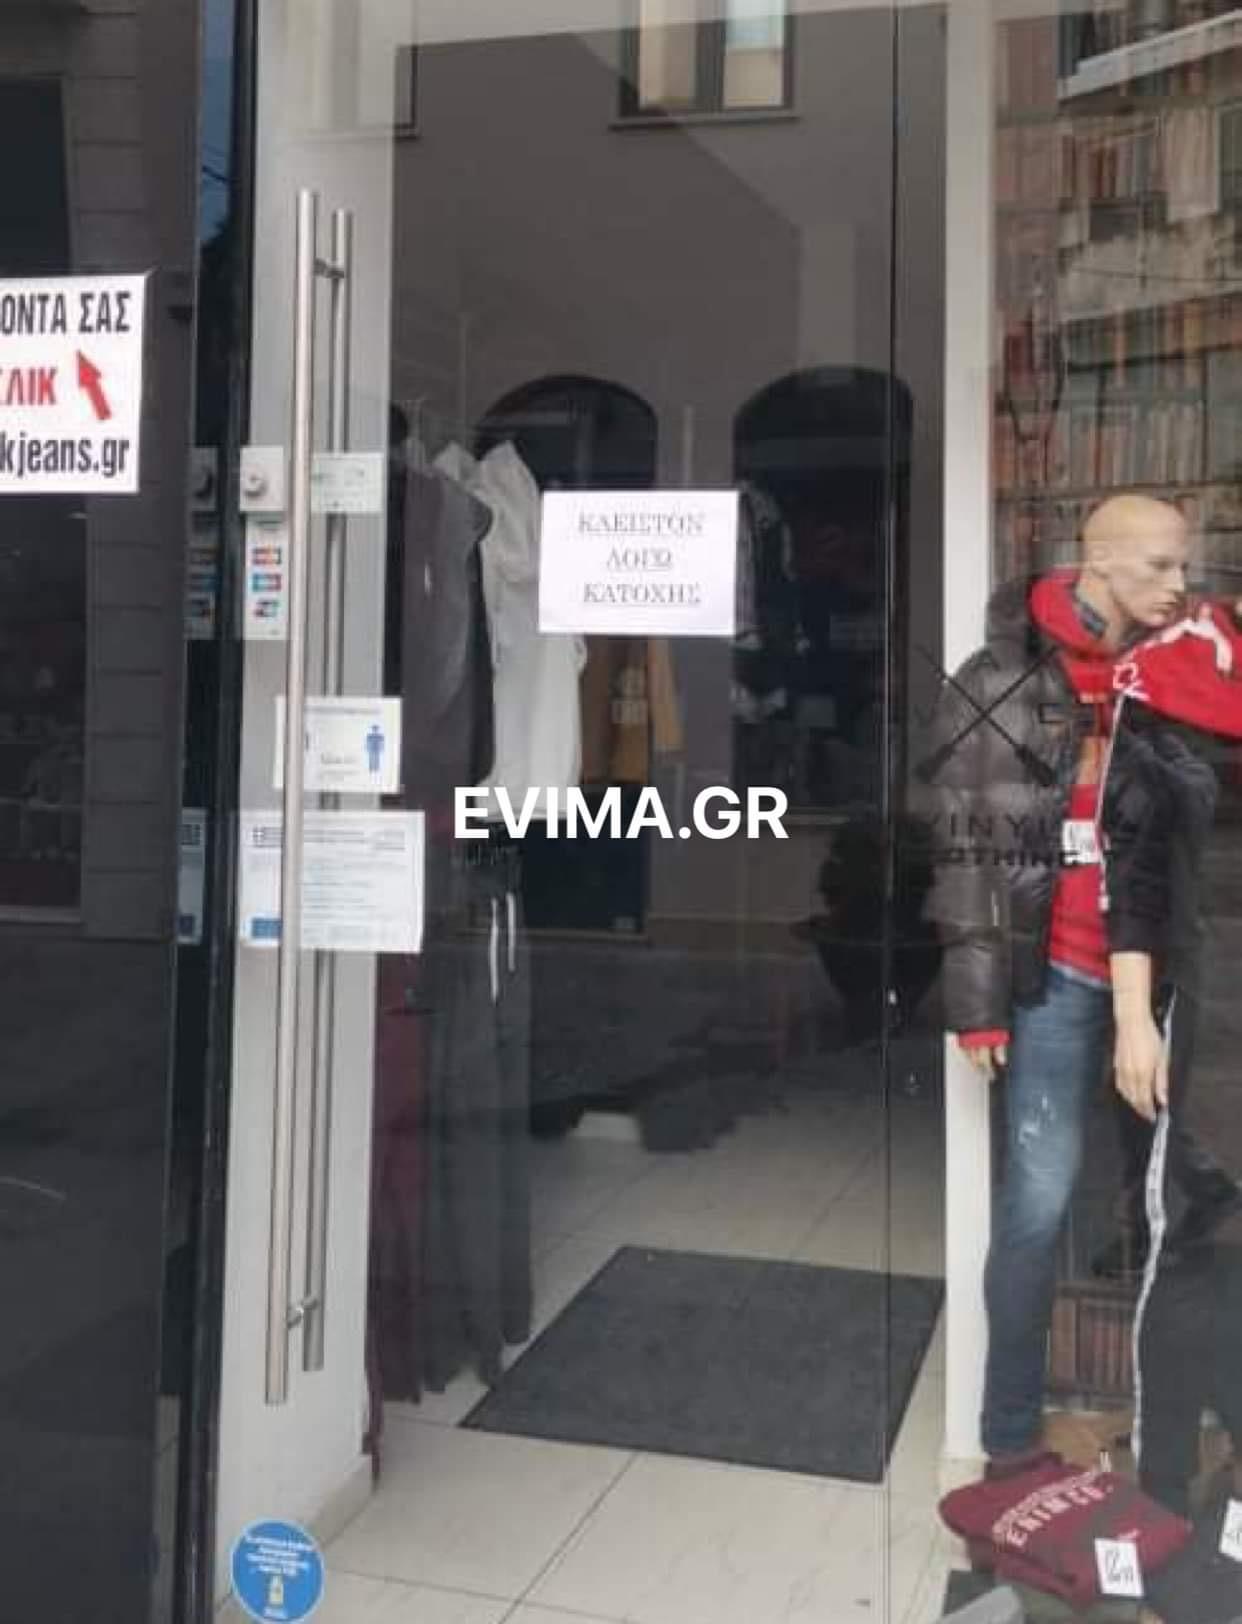 “Κλειστόν λόγω Κατοχής”: Η αναρτημένη επιγραφή σε καταστήματα της Χαλκίδας